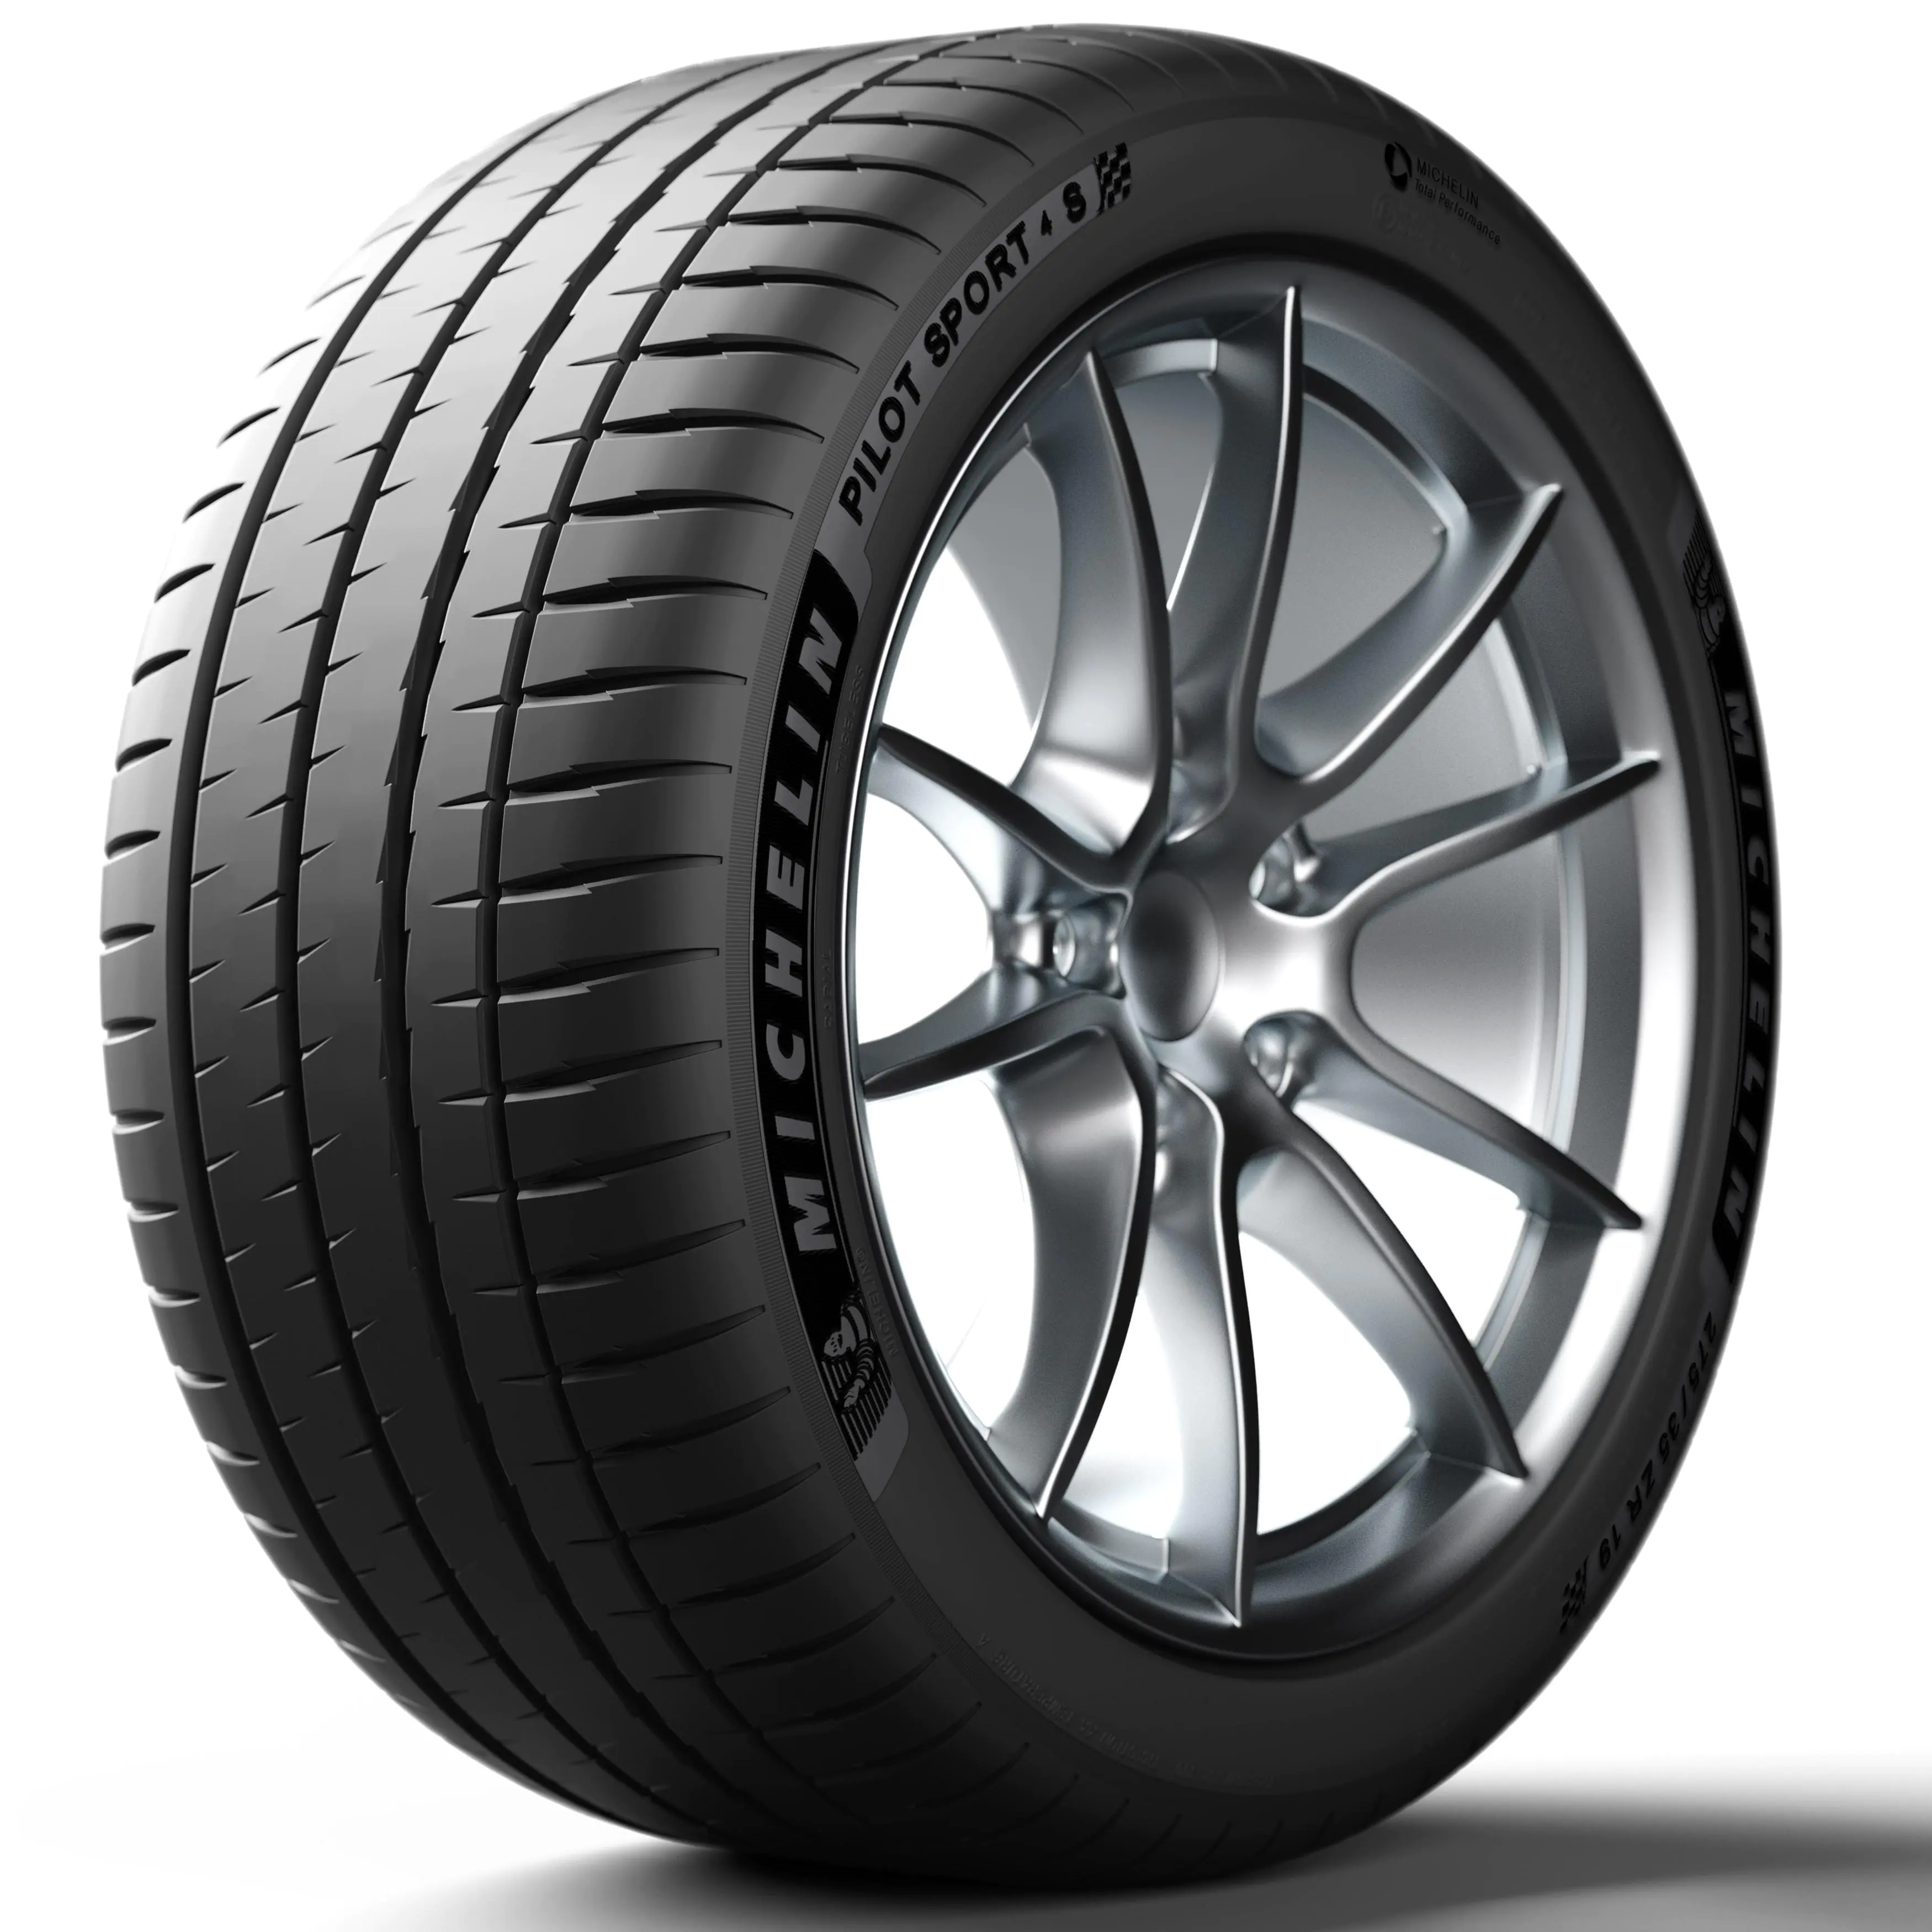 Michelin Michelin 285/35 R20 104Y P.SPORT 4 S XL pneumatici nuovi Estivo 